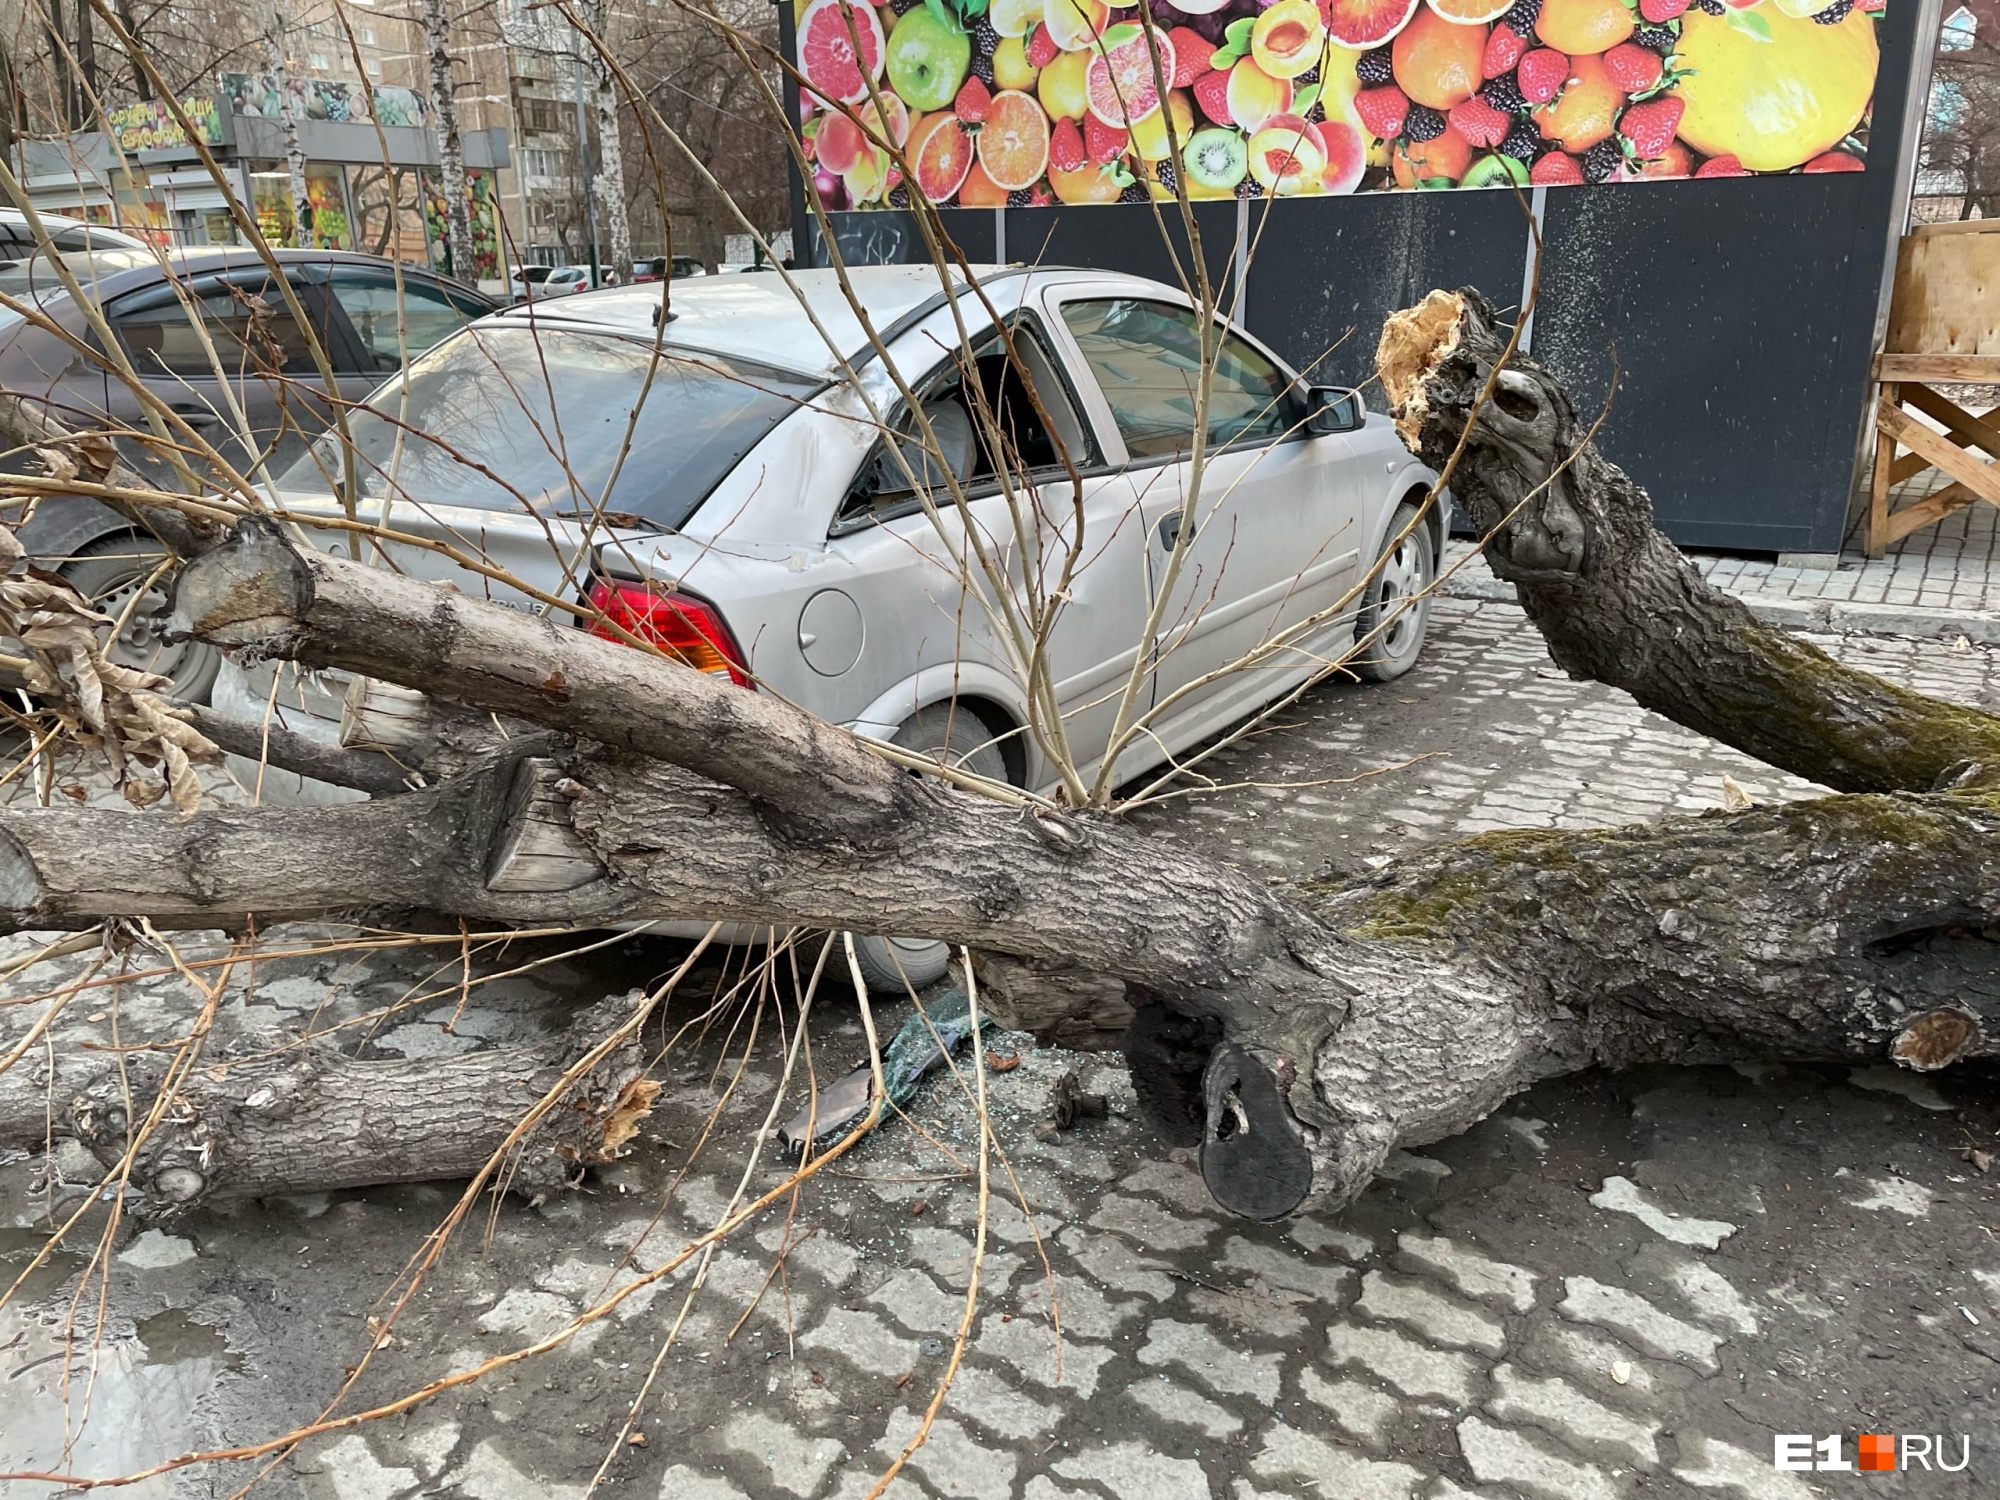 «На ремонт уйдет примерно 100 тысяч»: в Екатеринбурге сгнившее дерево рухнуло на припаркованный автомобиль